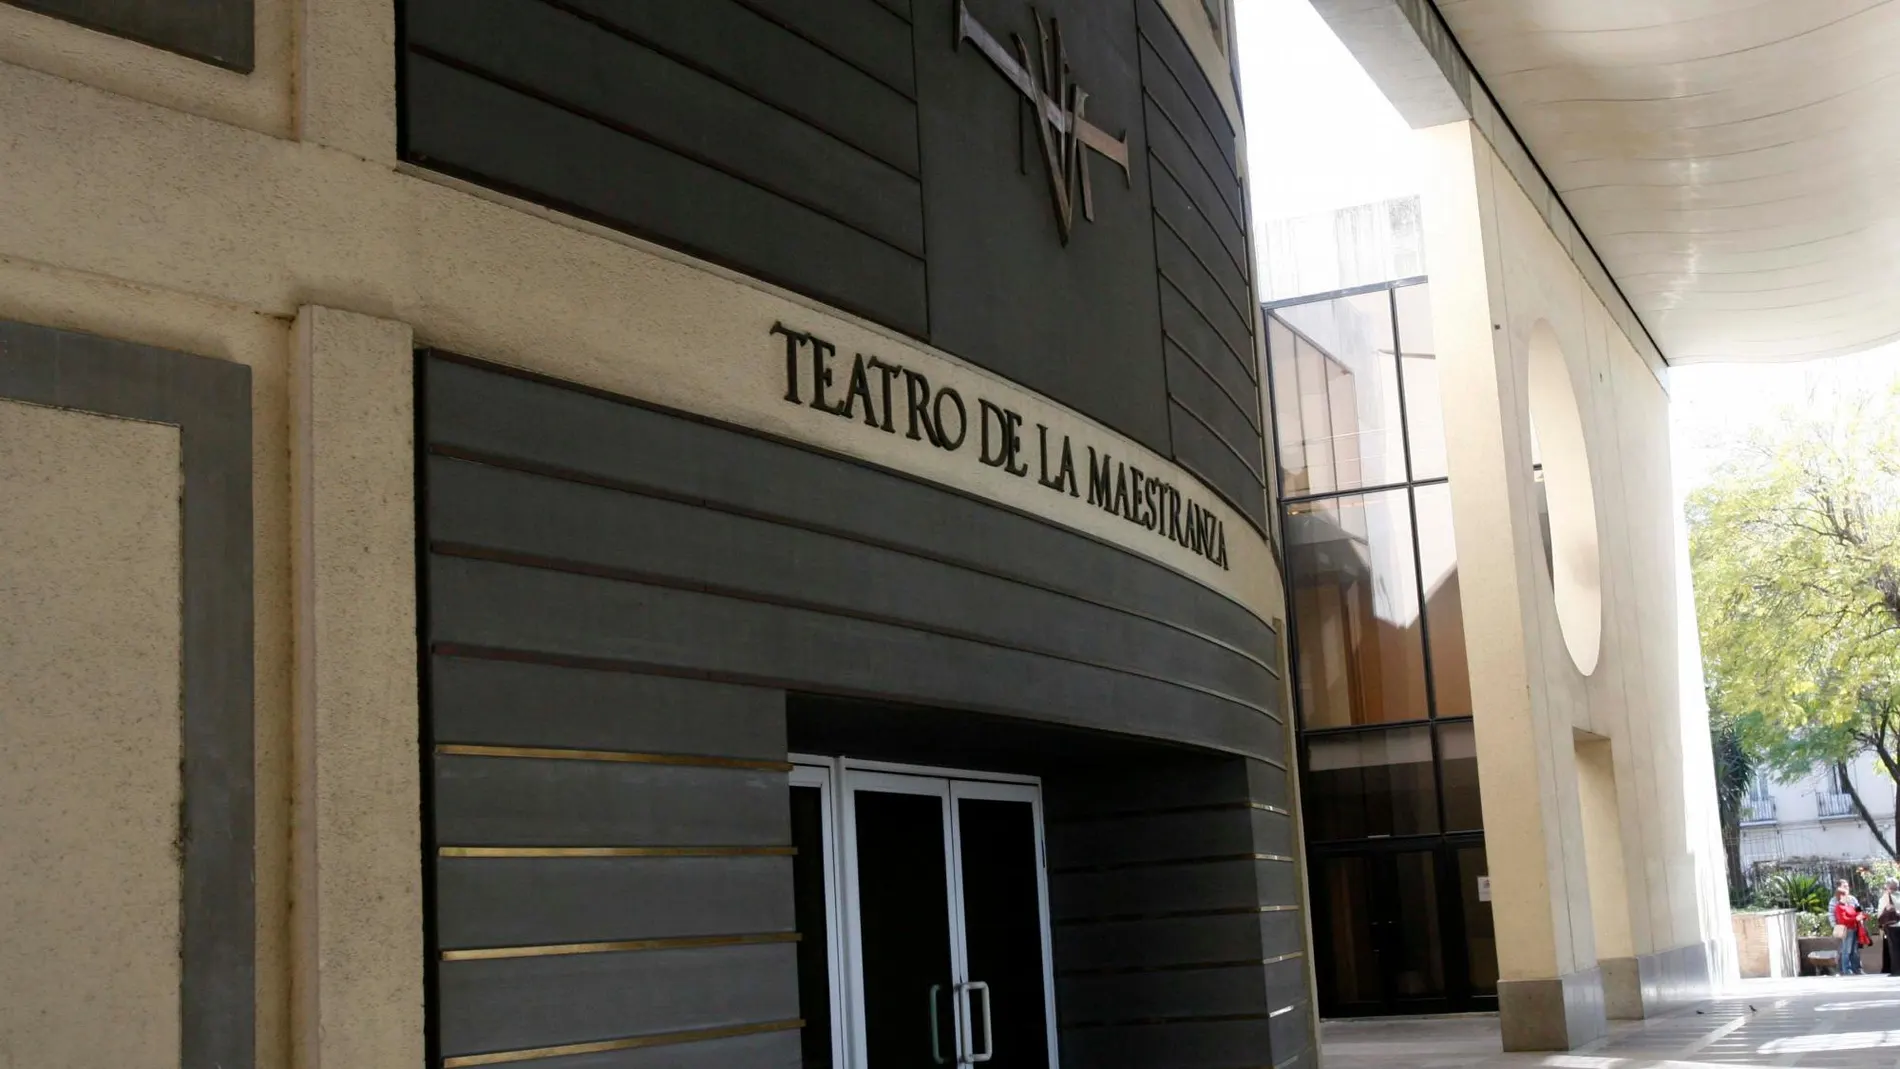 Imagen de la puerta de entrada del Teatro de la Maestranza